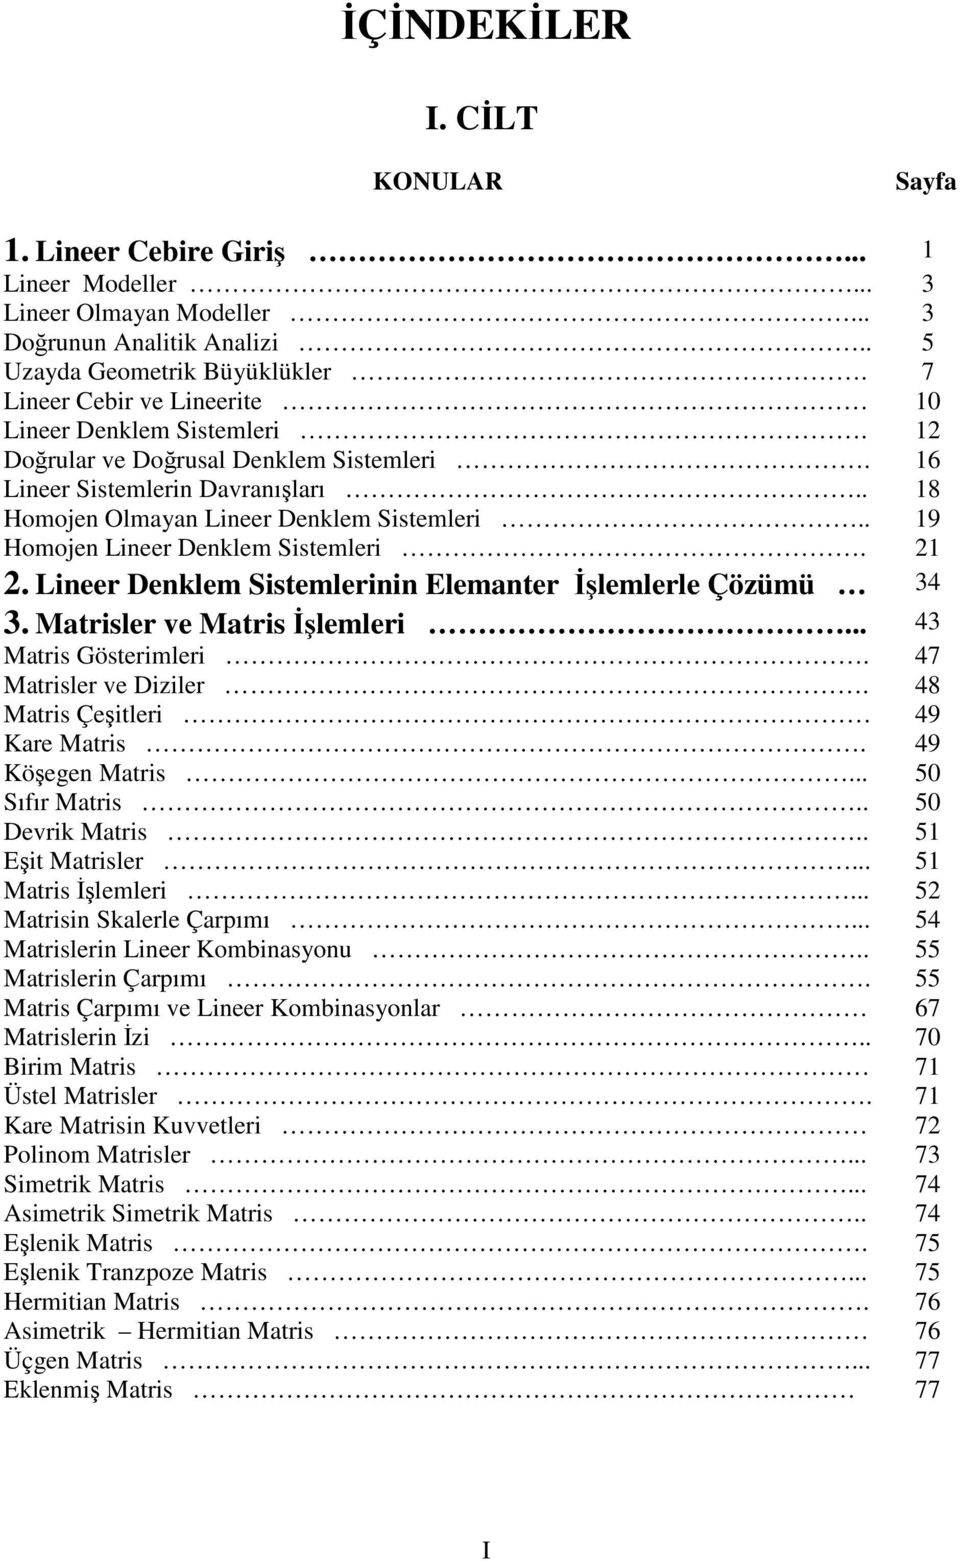 . 19 Homojen Lineer Denklem Sistemleri. 21 2. Lineer Denklem Sistemlerinin Elemanter lemlerle Çözümü 34 3. Matrisler ve Matris lemleri... 43 Matris Gösterimleri. 47 Matrisler ve Diziler.